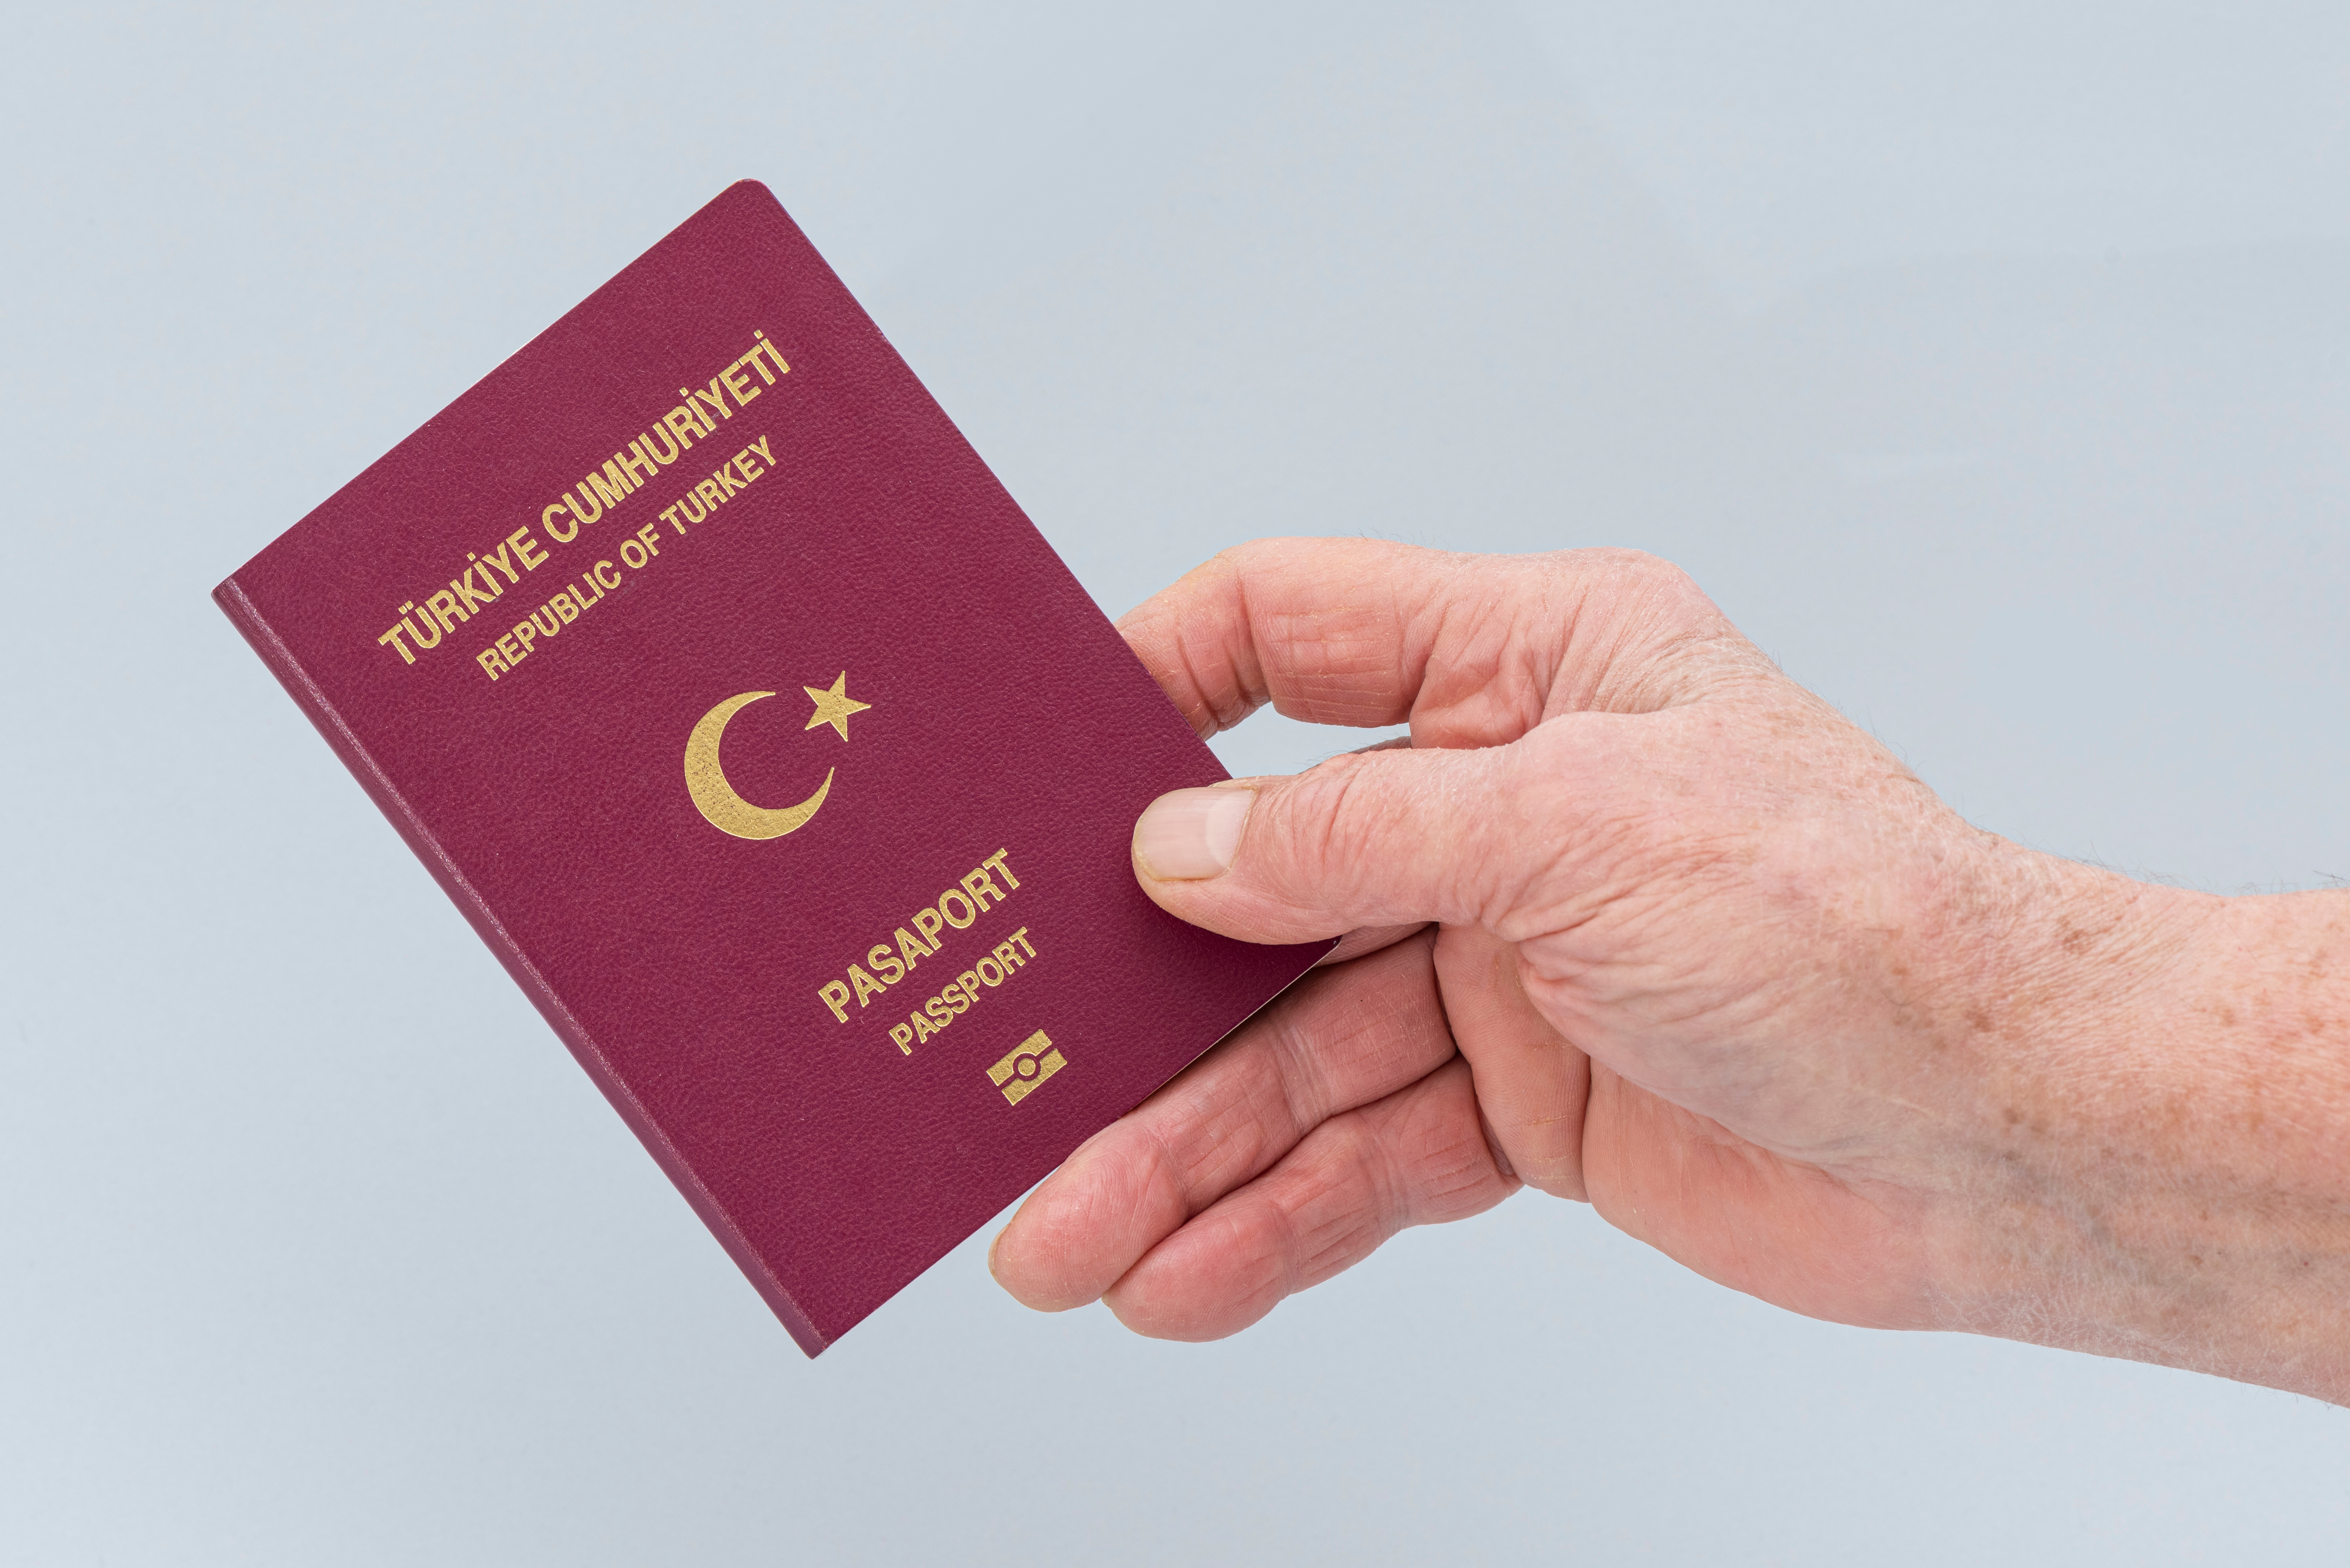 Турецкий паспорт, который могут получить иностранцы